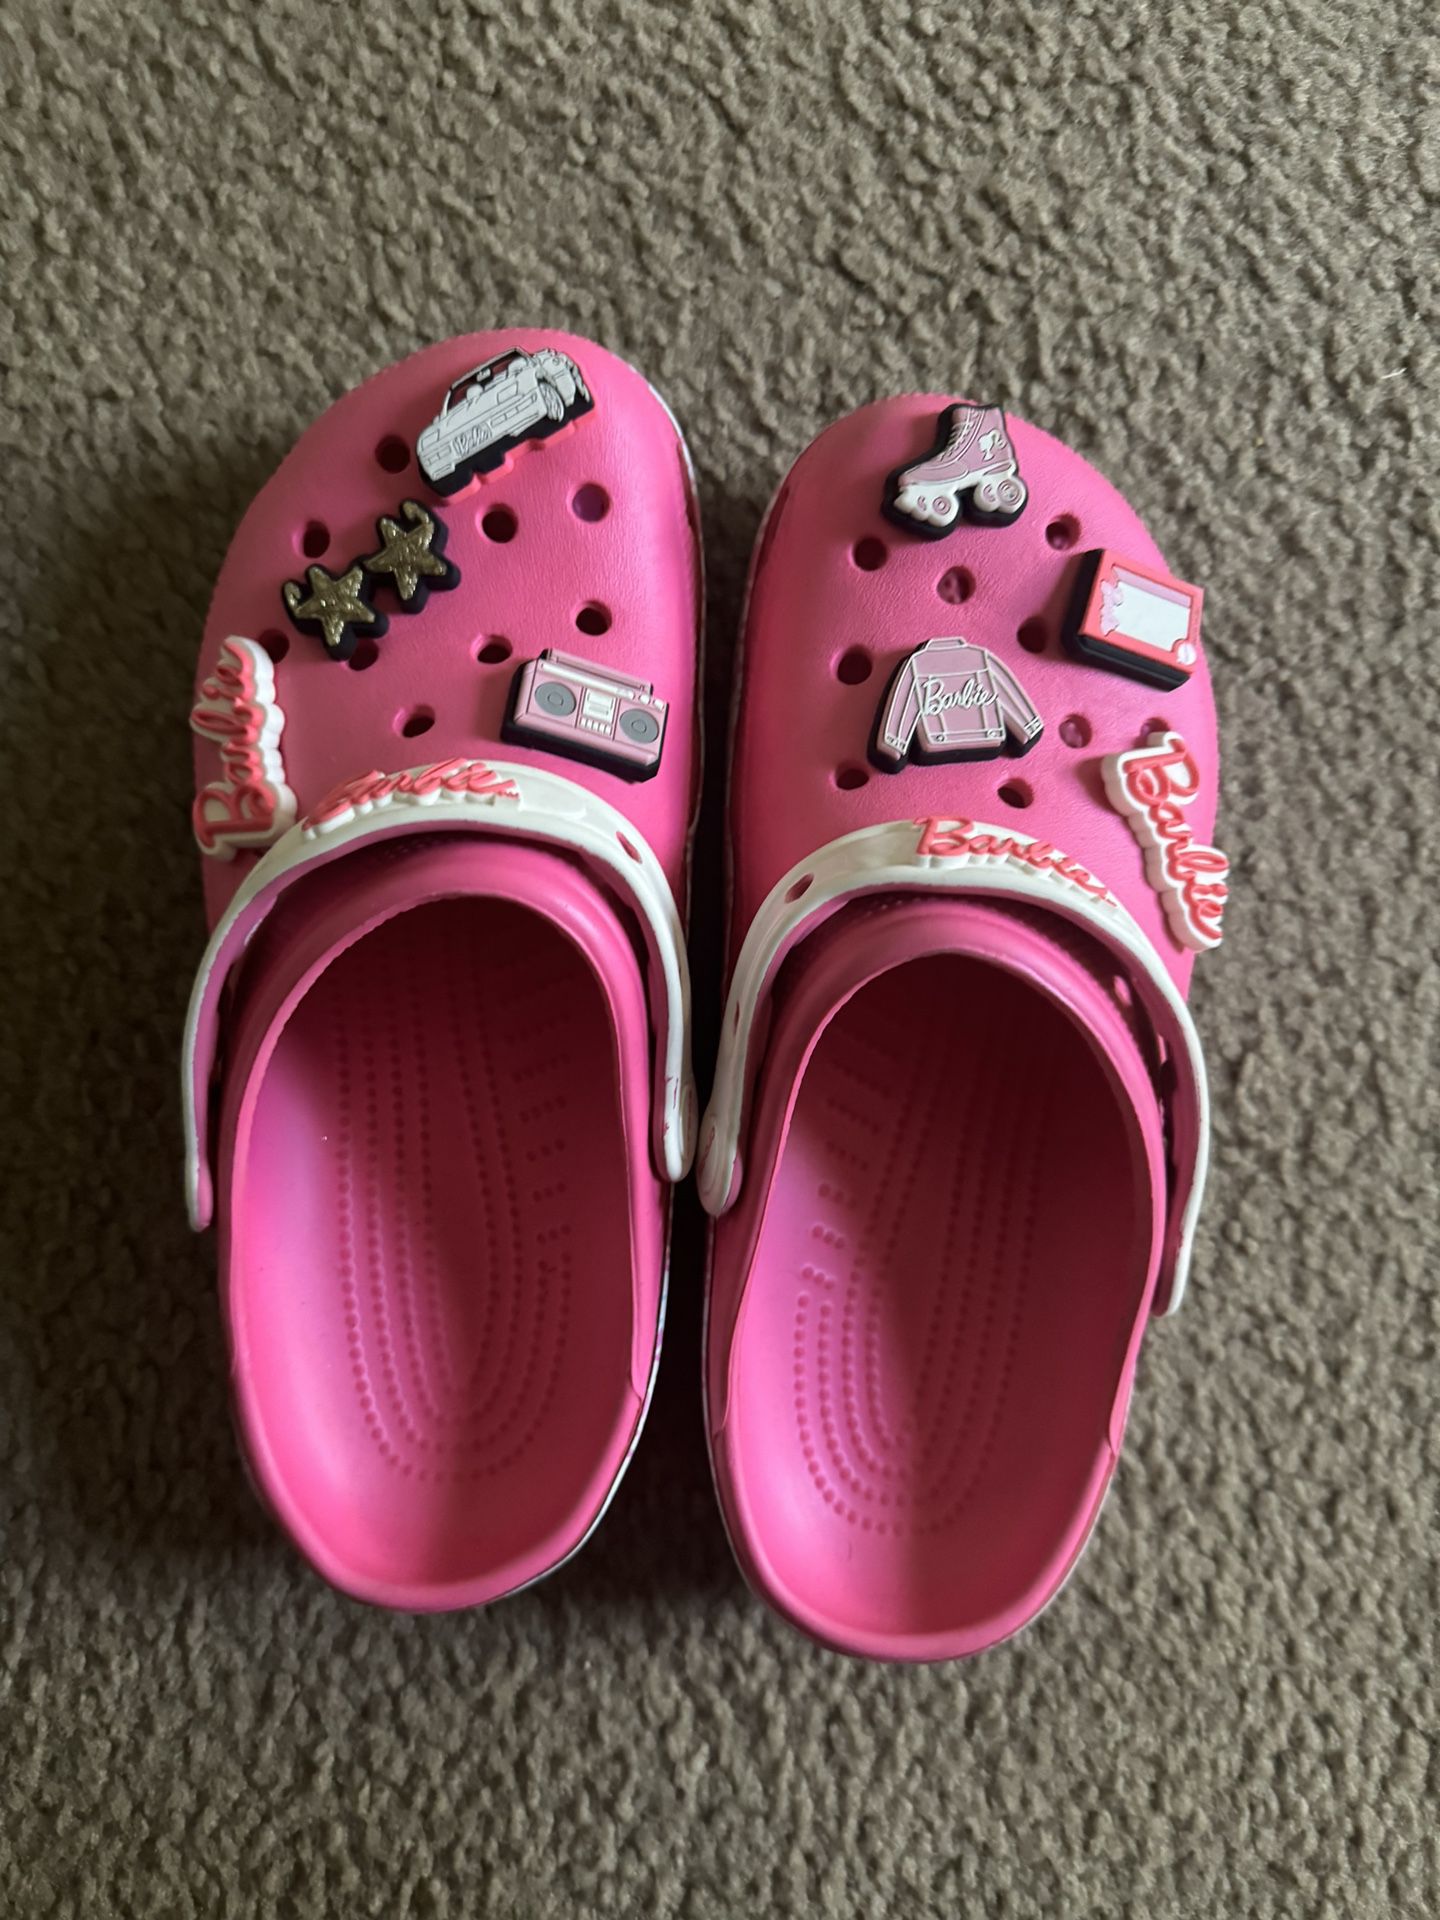 Barbie Crocs Women’s Size 9, Men’s Size 7